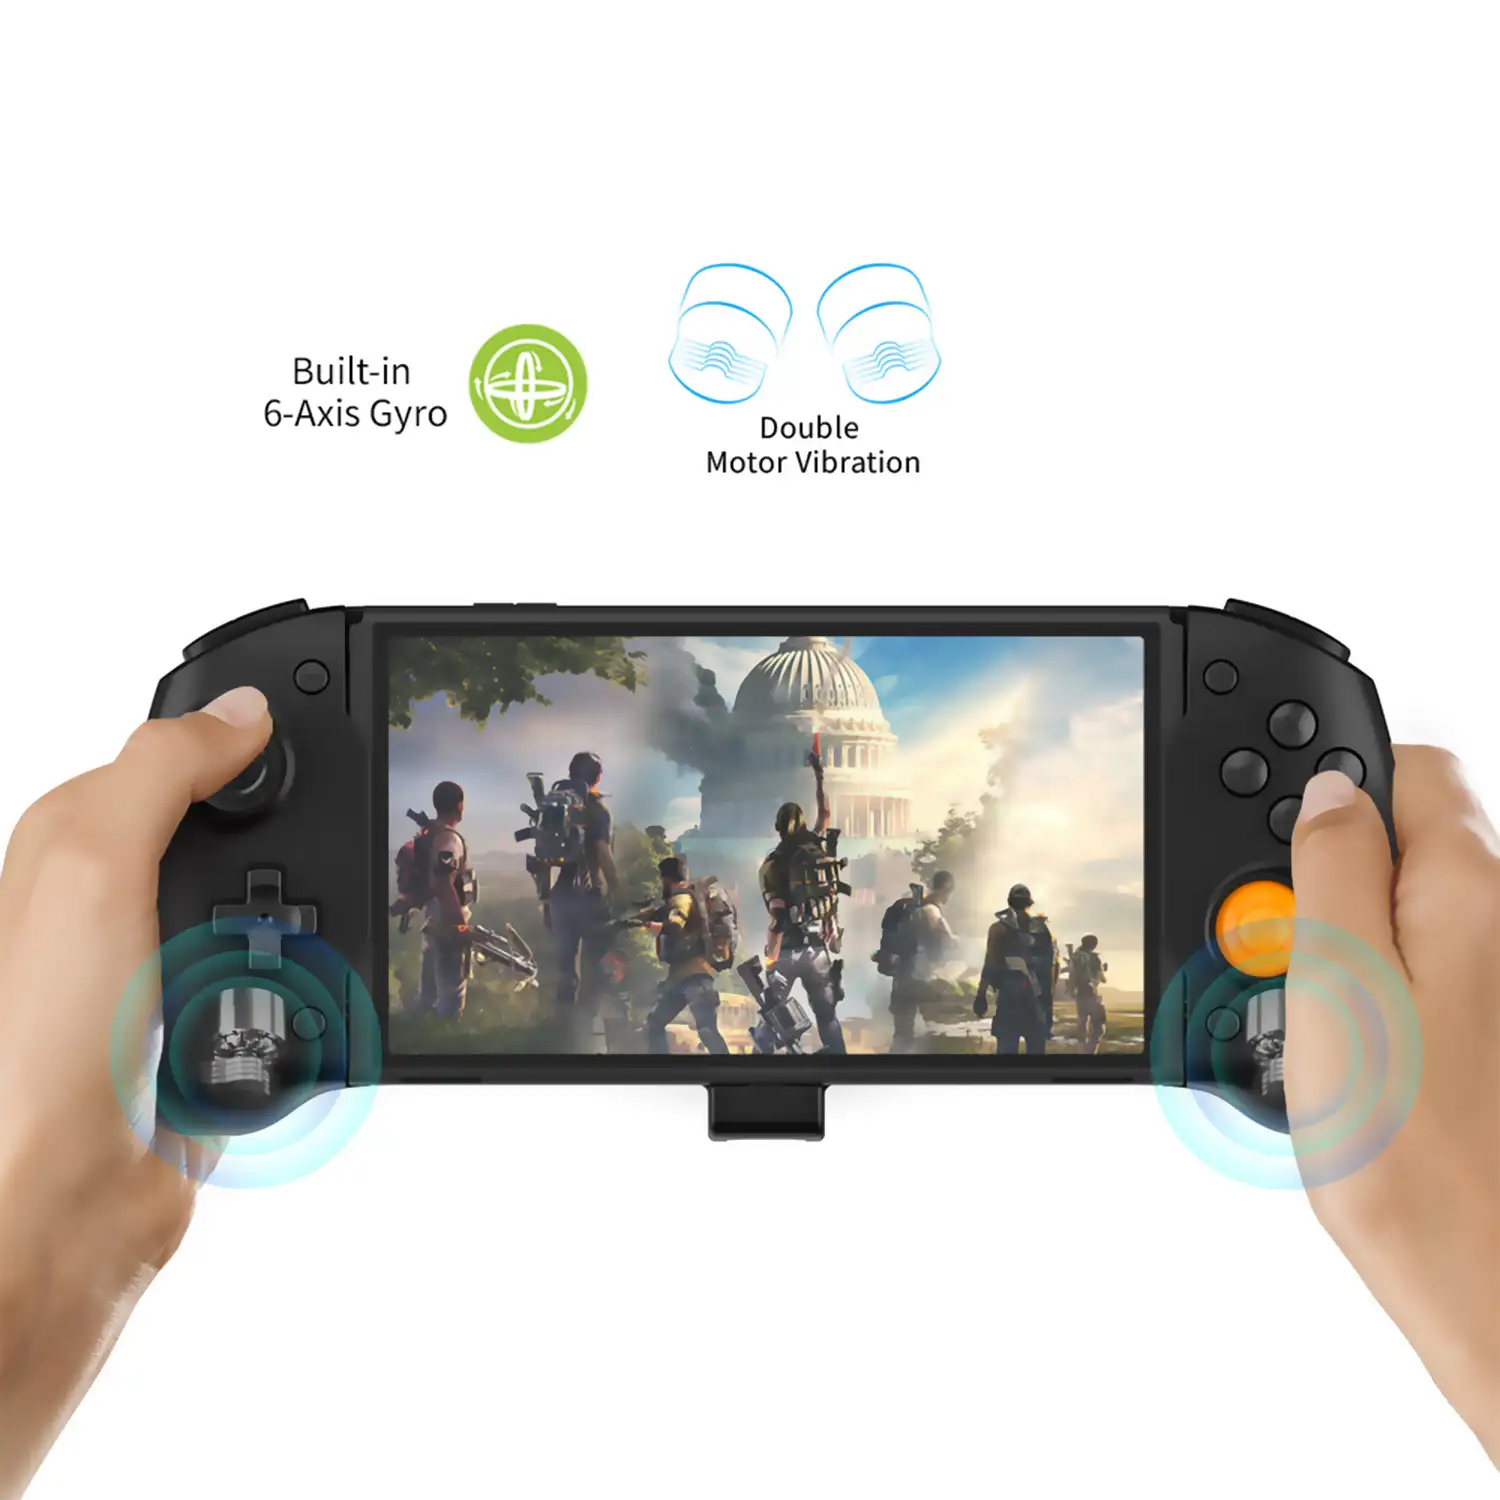 Mando Grip compatible con Nintendo Switch TNS-1125. Conexión auto, funciones mapping, motores de vibración, sensores giroscópicos